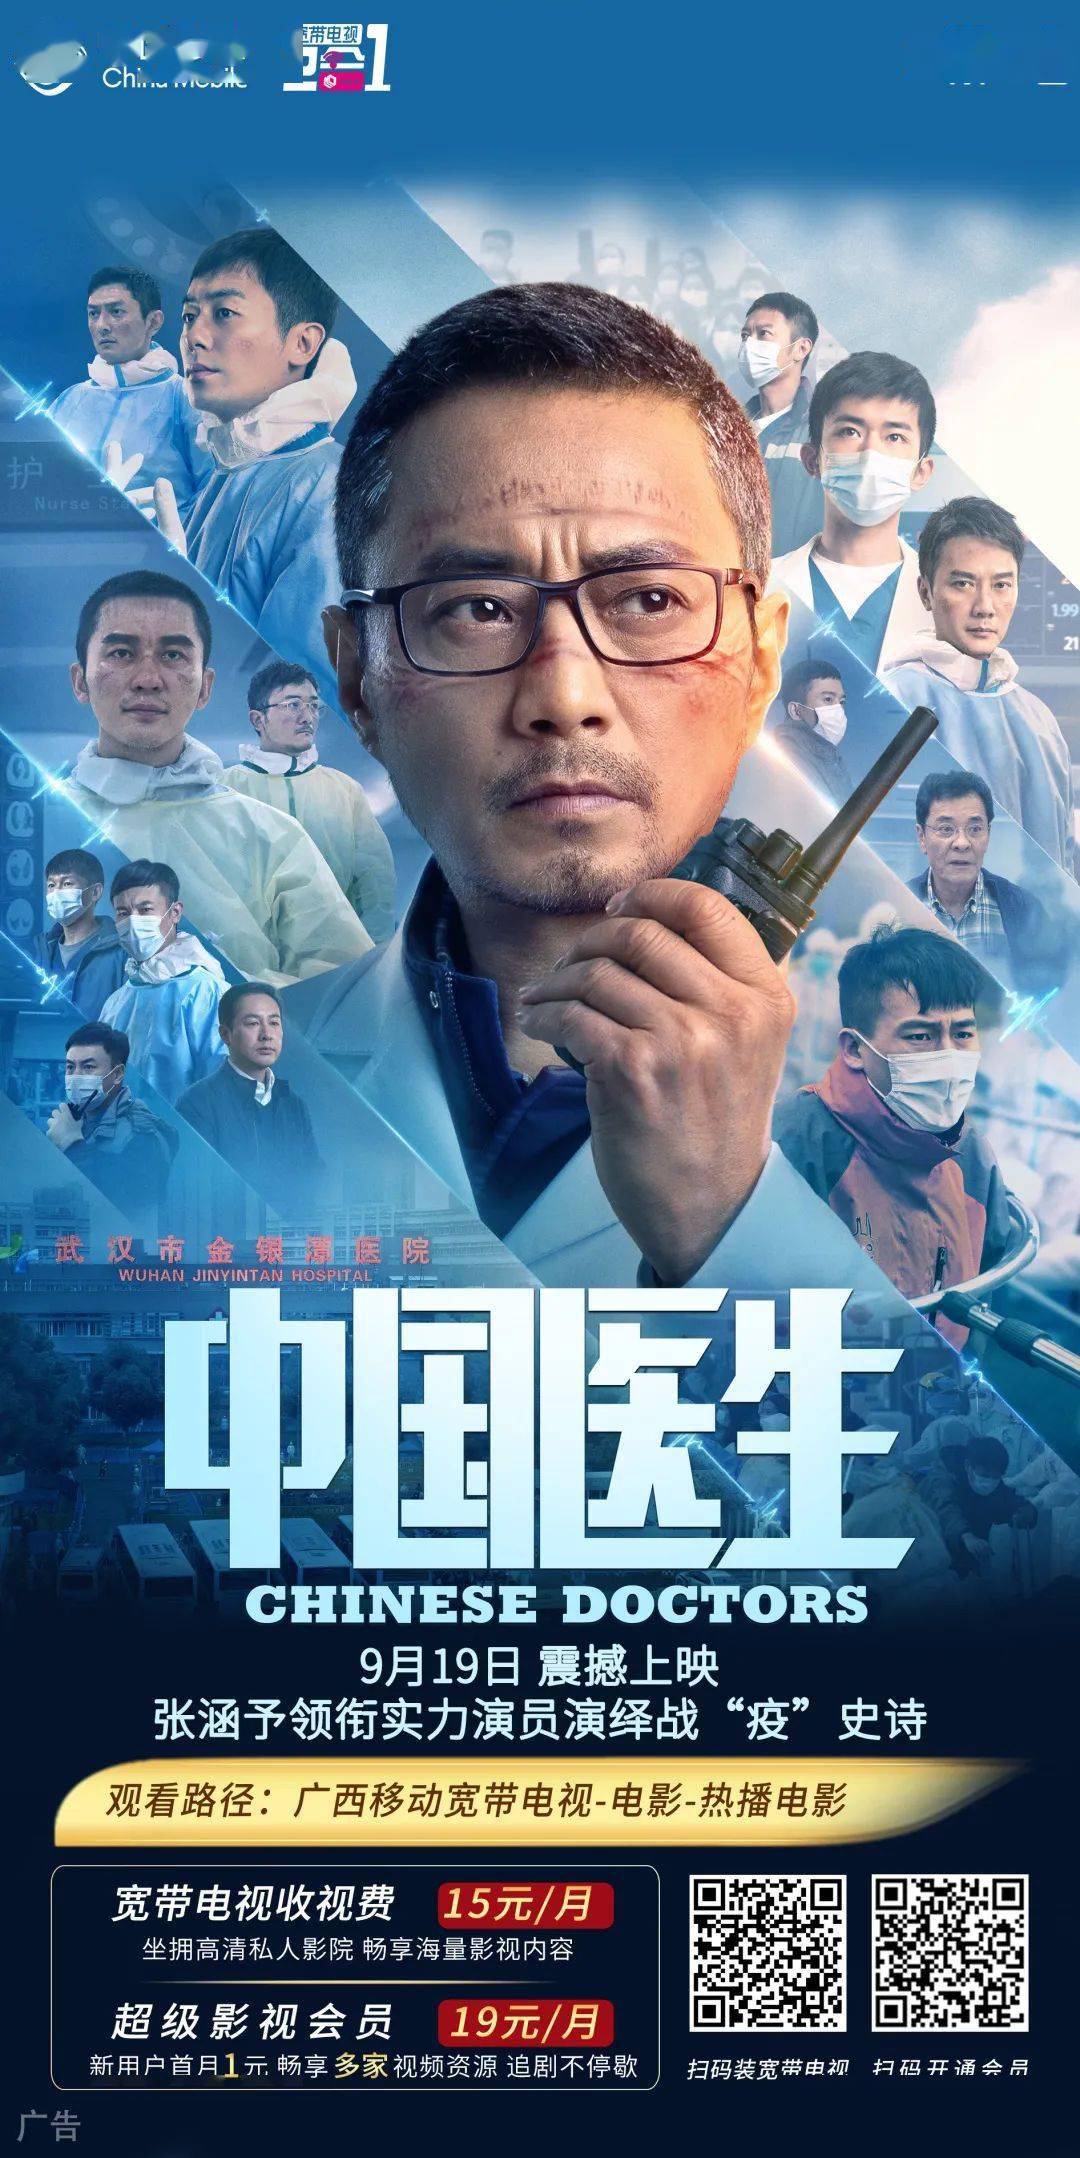 文共同监制的抗疫题材电影,中国胜利三部曲的开篇之作《中国医生》